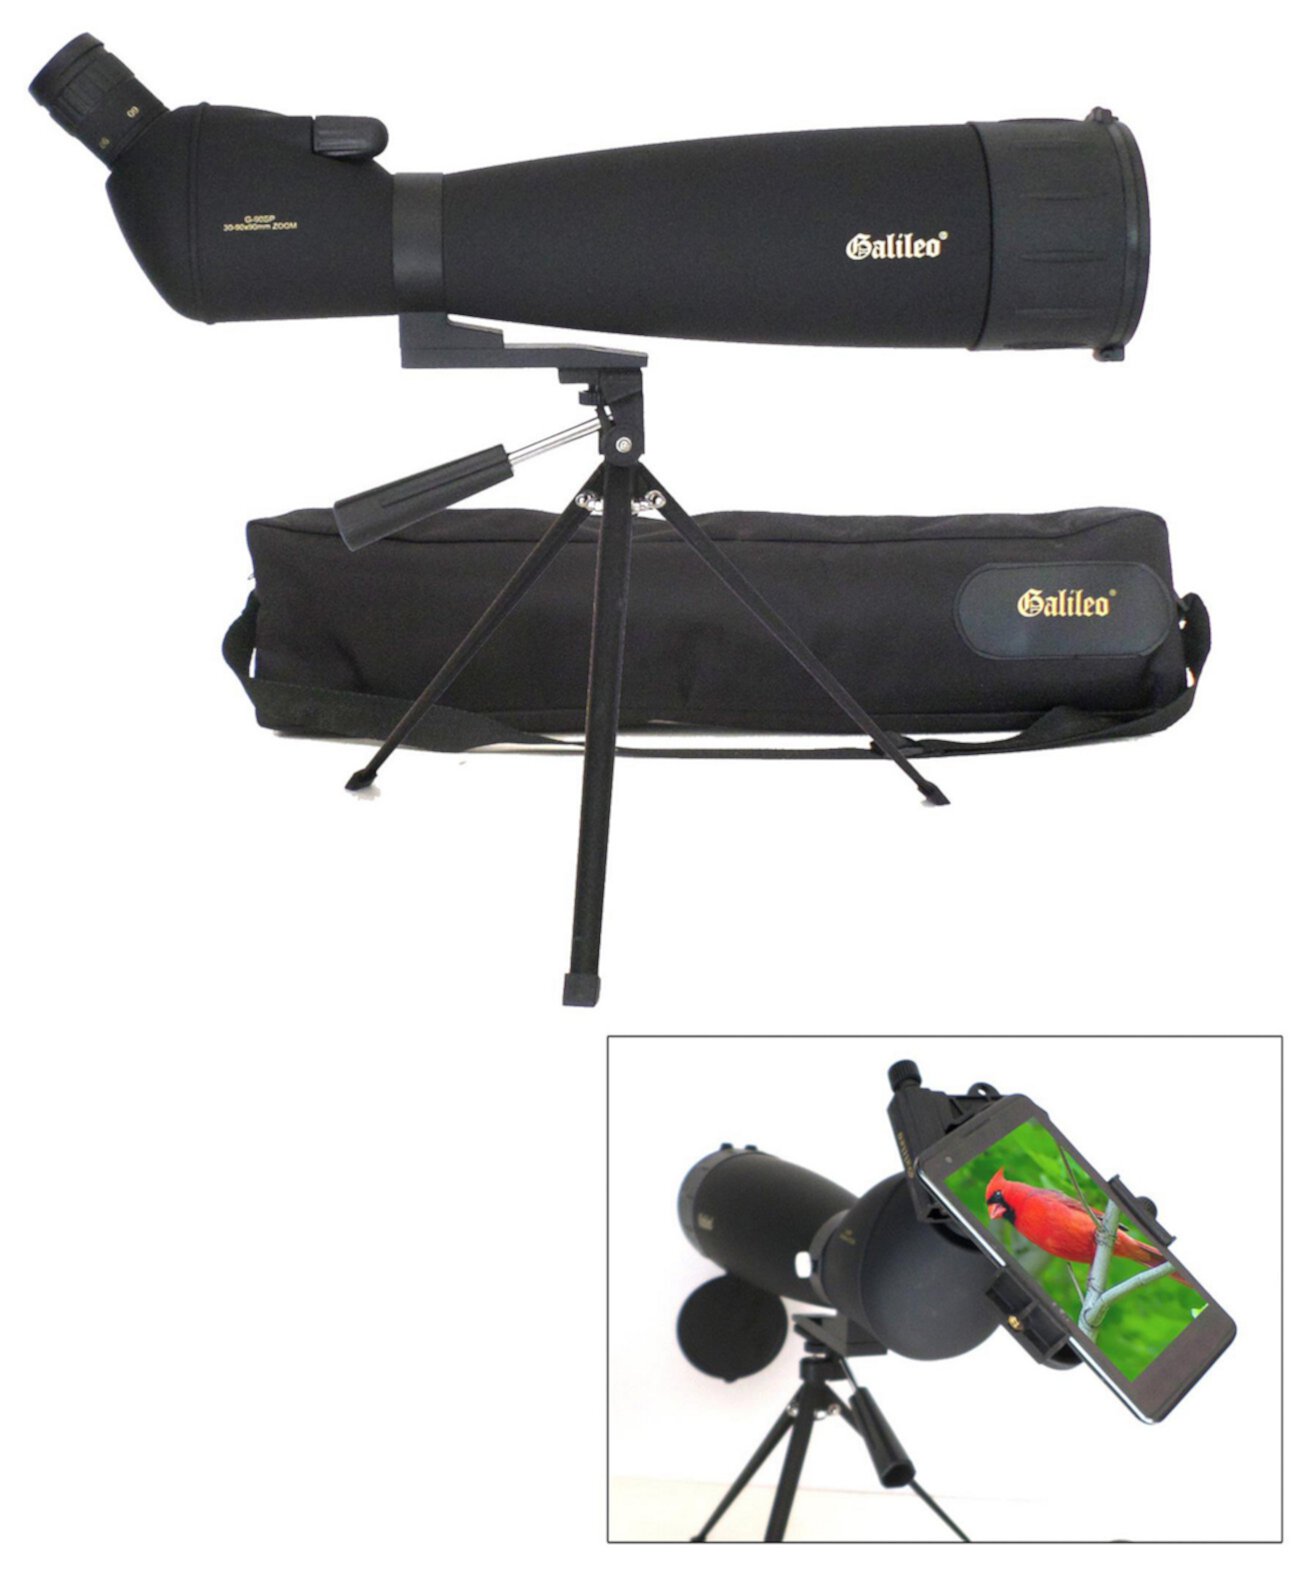 Зрительная труба с увеличением 30x - 90x с адаптером для смартфона и наплечным чехлом Galileo